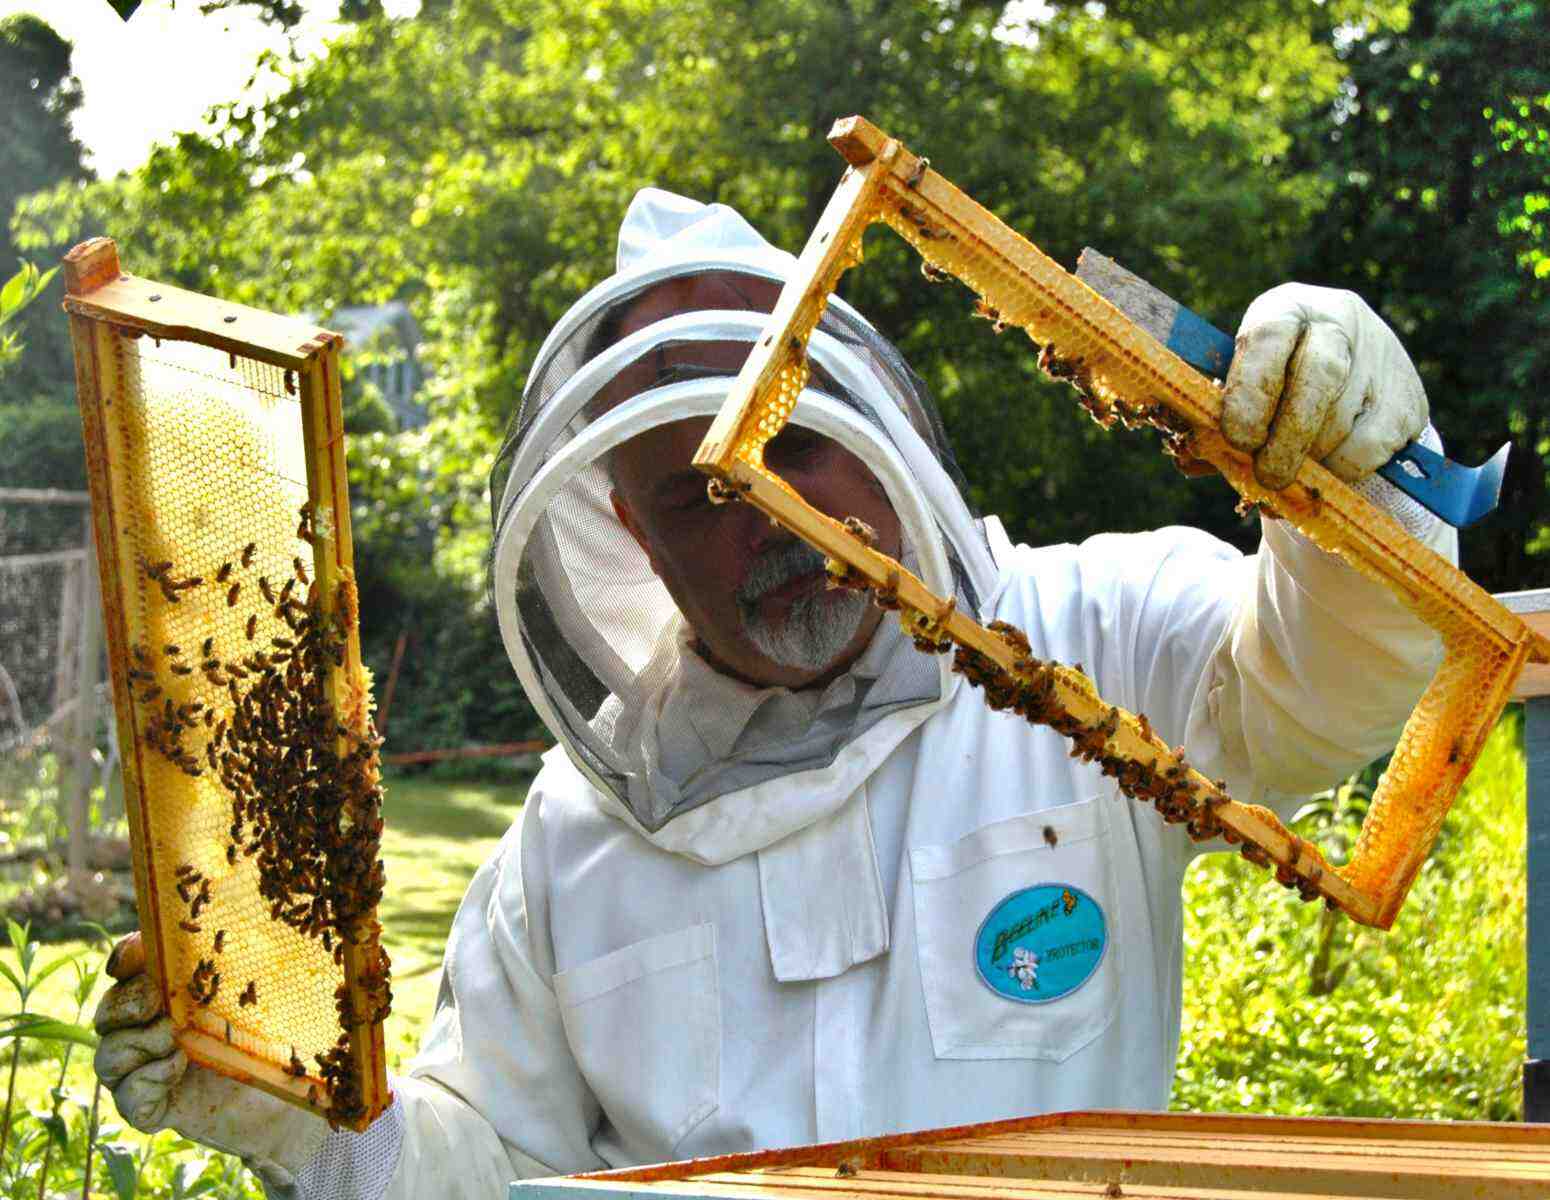 Comment remplir Siret apiculteur ?